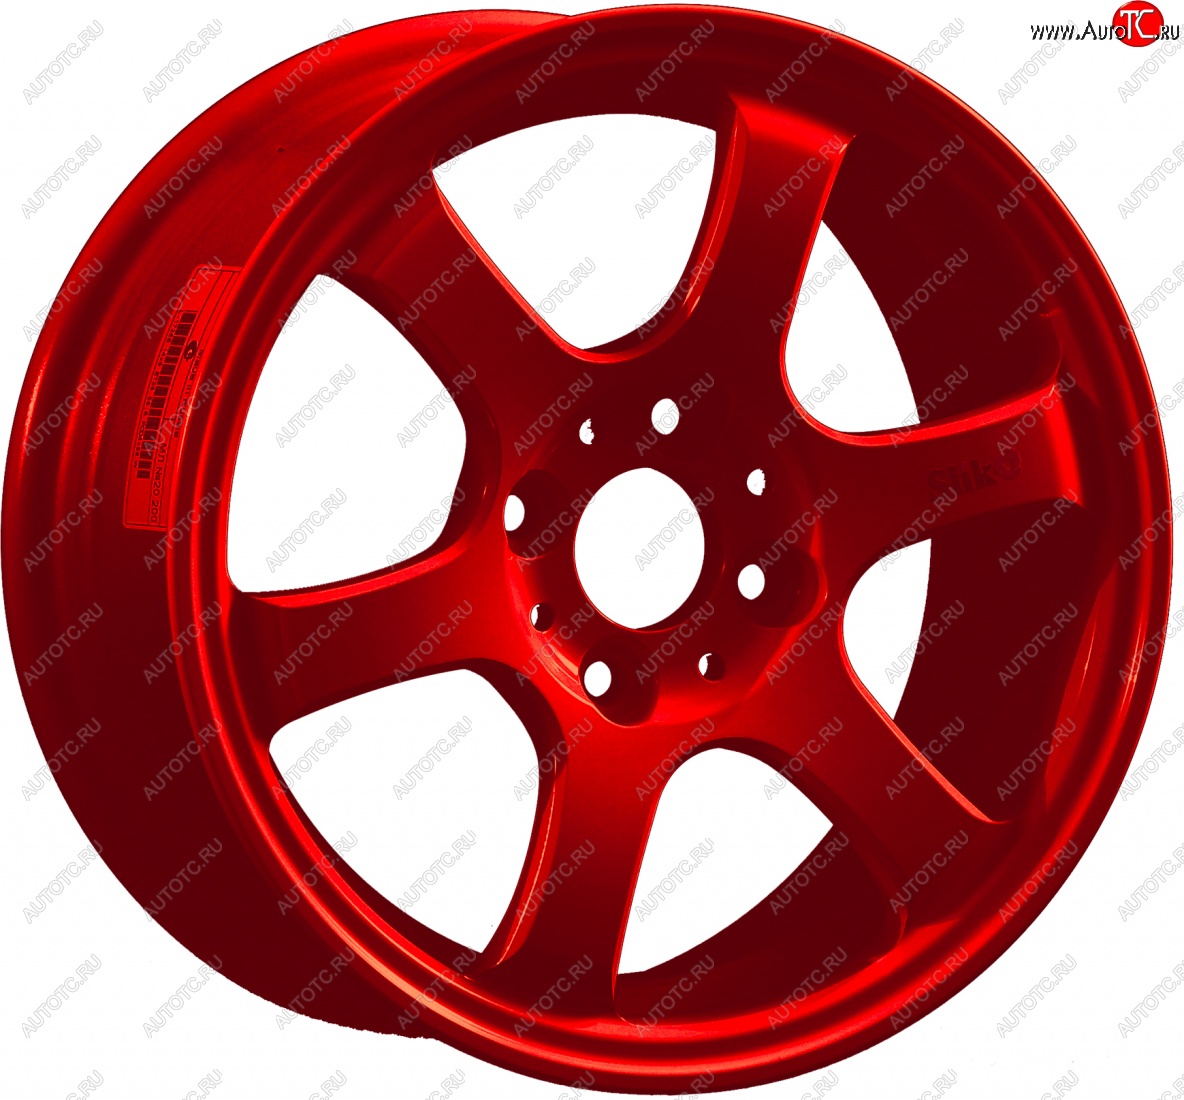 13 499 р. Кованый диск Slik Classic Sport L-1726S 6.0x14   (Красный (RED))